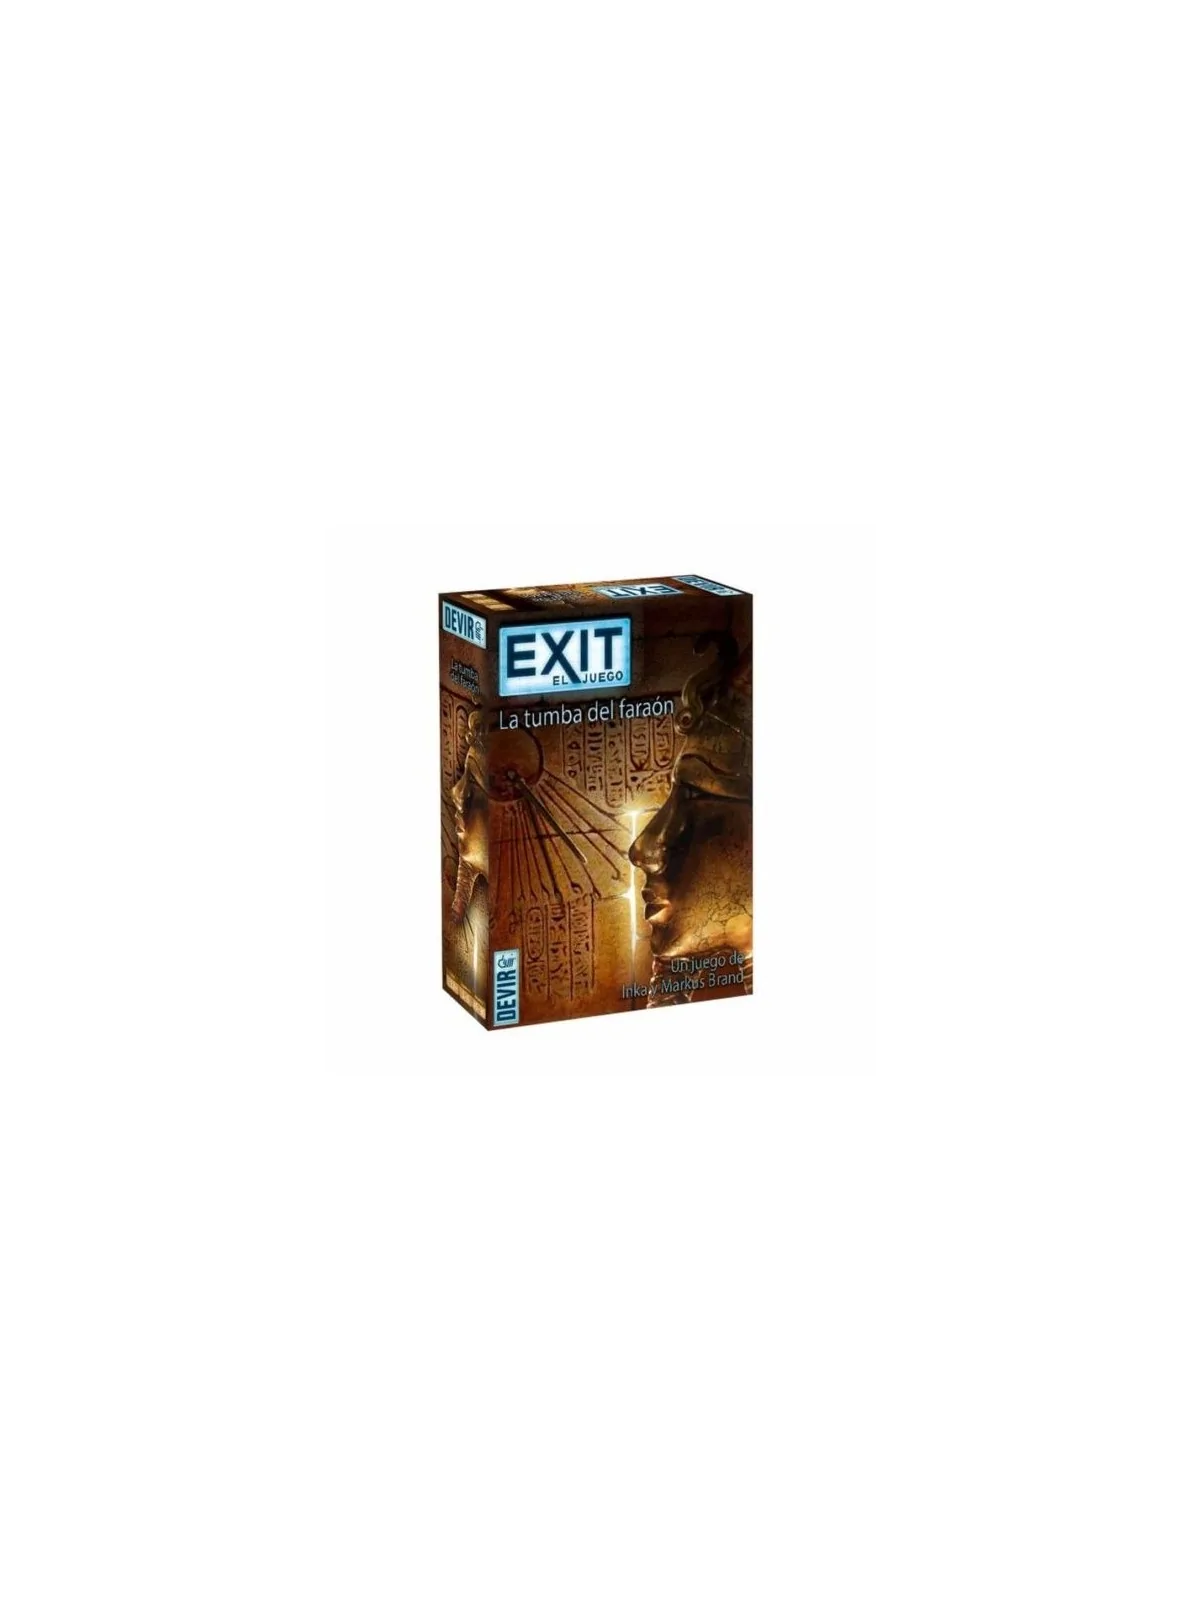 Comprar Exit: La Tumba del Faraon barato al mejor precio 12,71 € de De